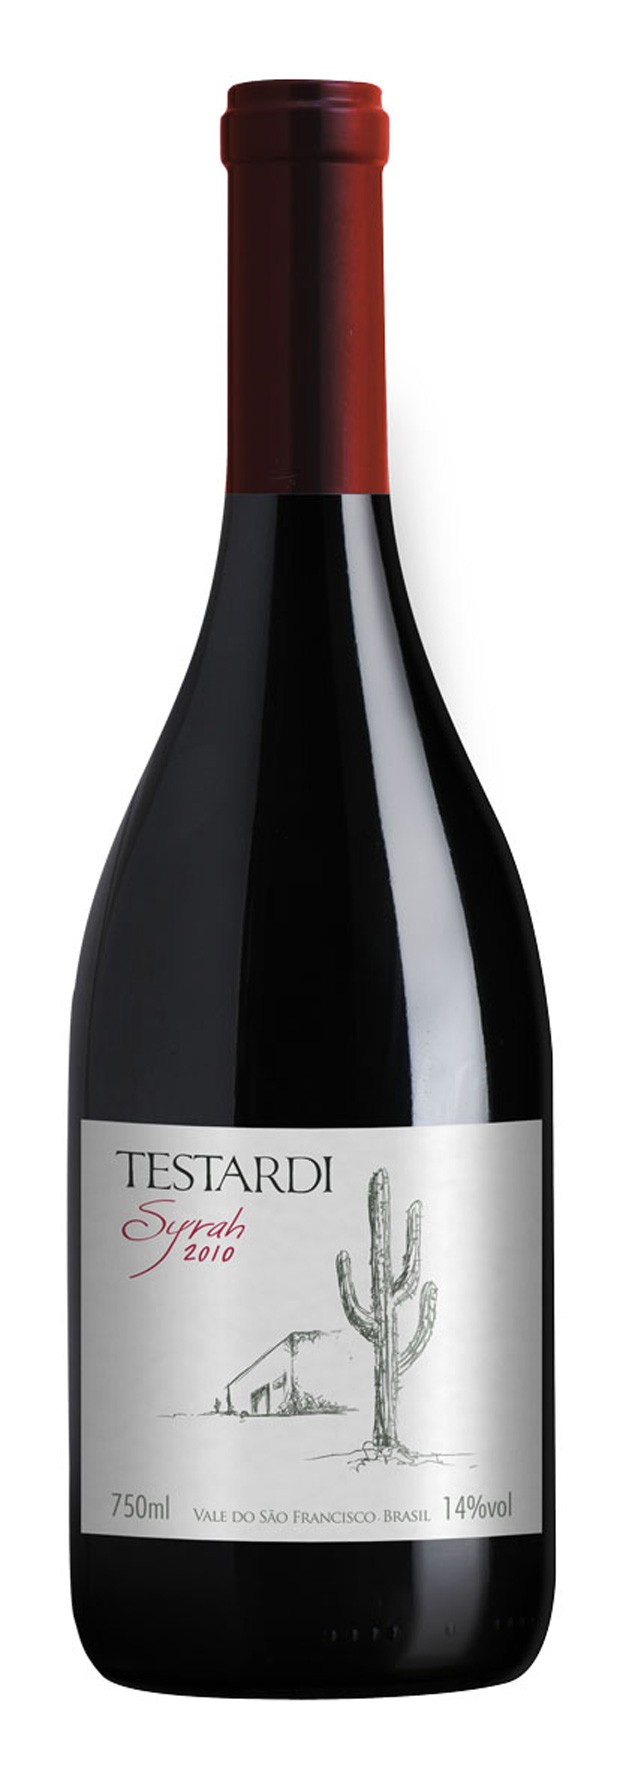 Testardi Syrah 2012, ganhou o top ten do salão. o vinho é elaborado pelo processo de fermentação integral dentro de barricas novas de carvalho e envelhecem por 12 meses (Foto: Reprodução)